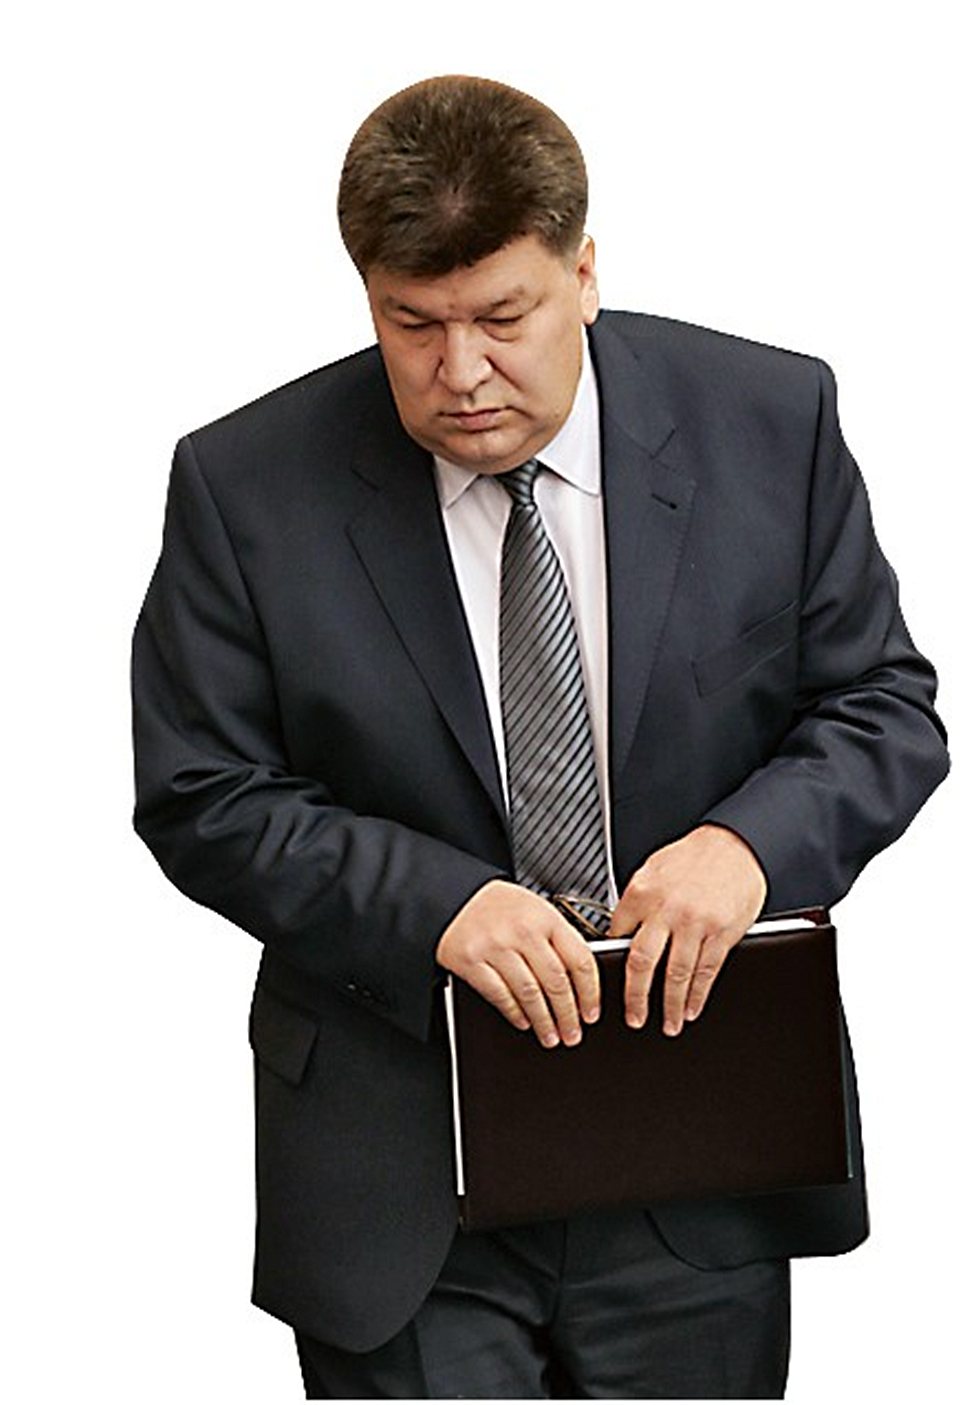 Масляков сохранил свой пост руководителя ФАЛХ после президентско-премьерской рокировки в мае 2012 года 